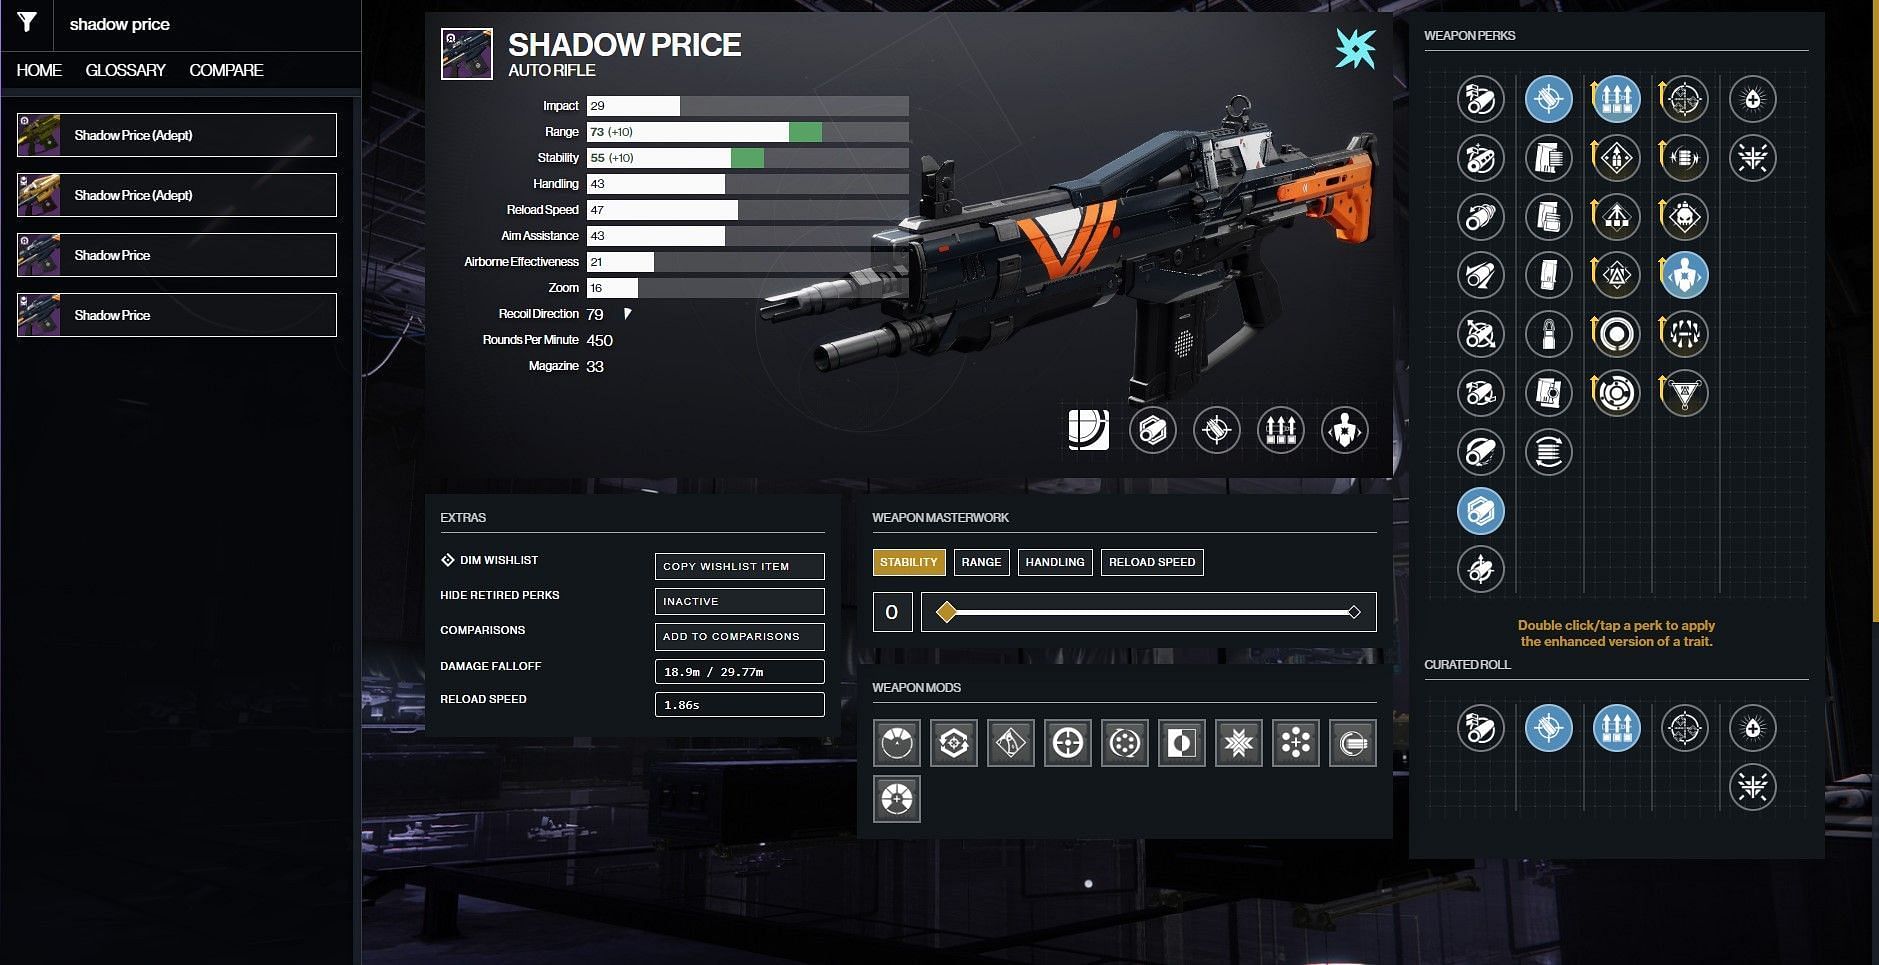 Shadow Price PvP god roll (Image via D2Gusmith)